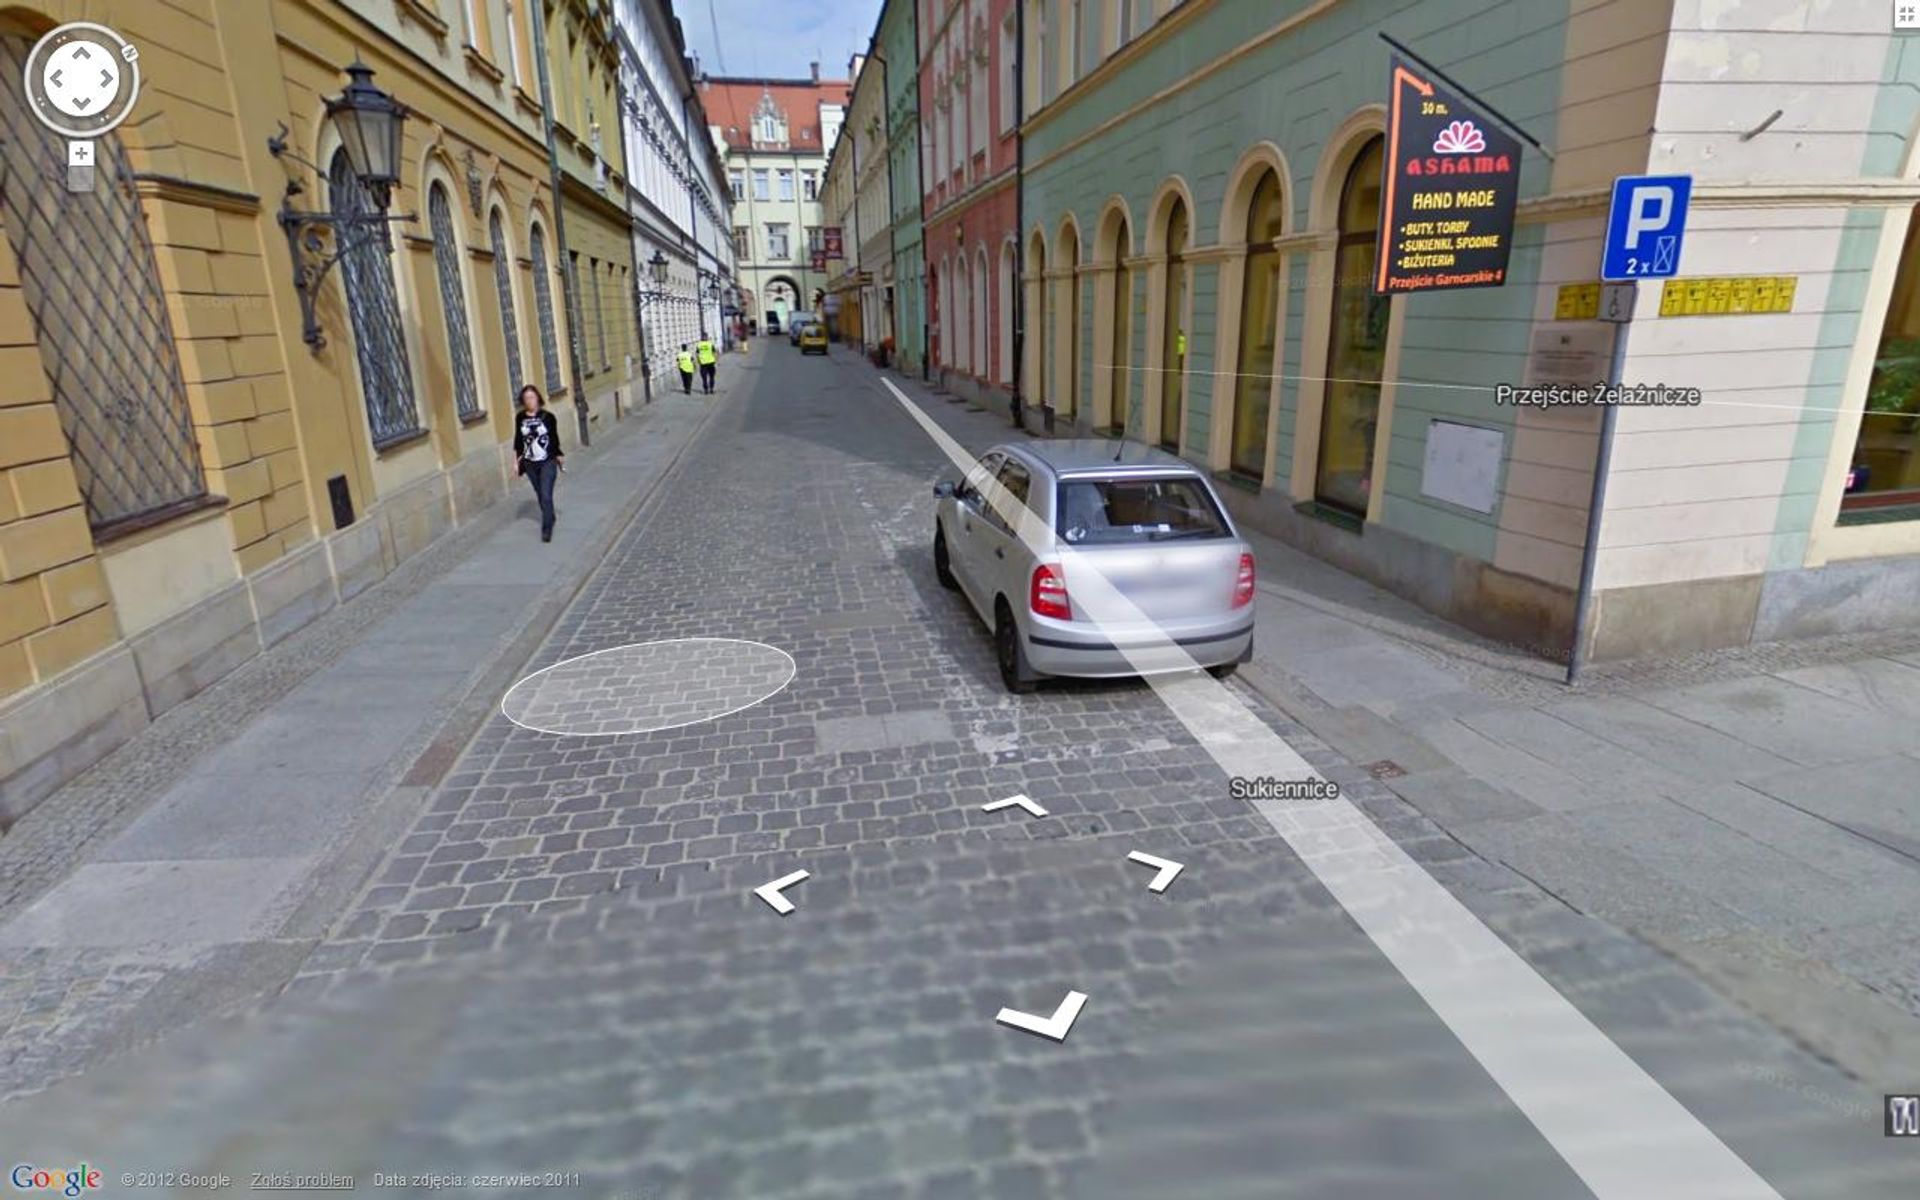  Wybierz się na wirtualną wycieczkę po Wrocławiu - Google Street View już działa